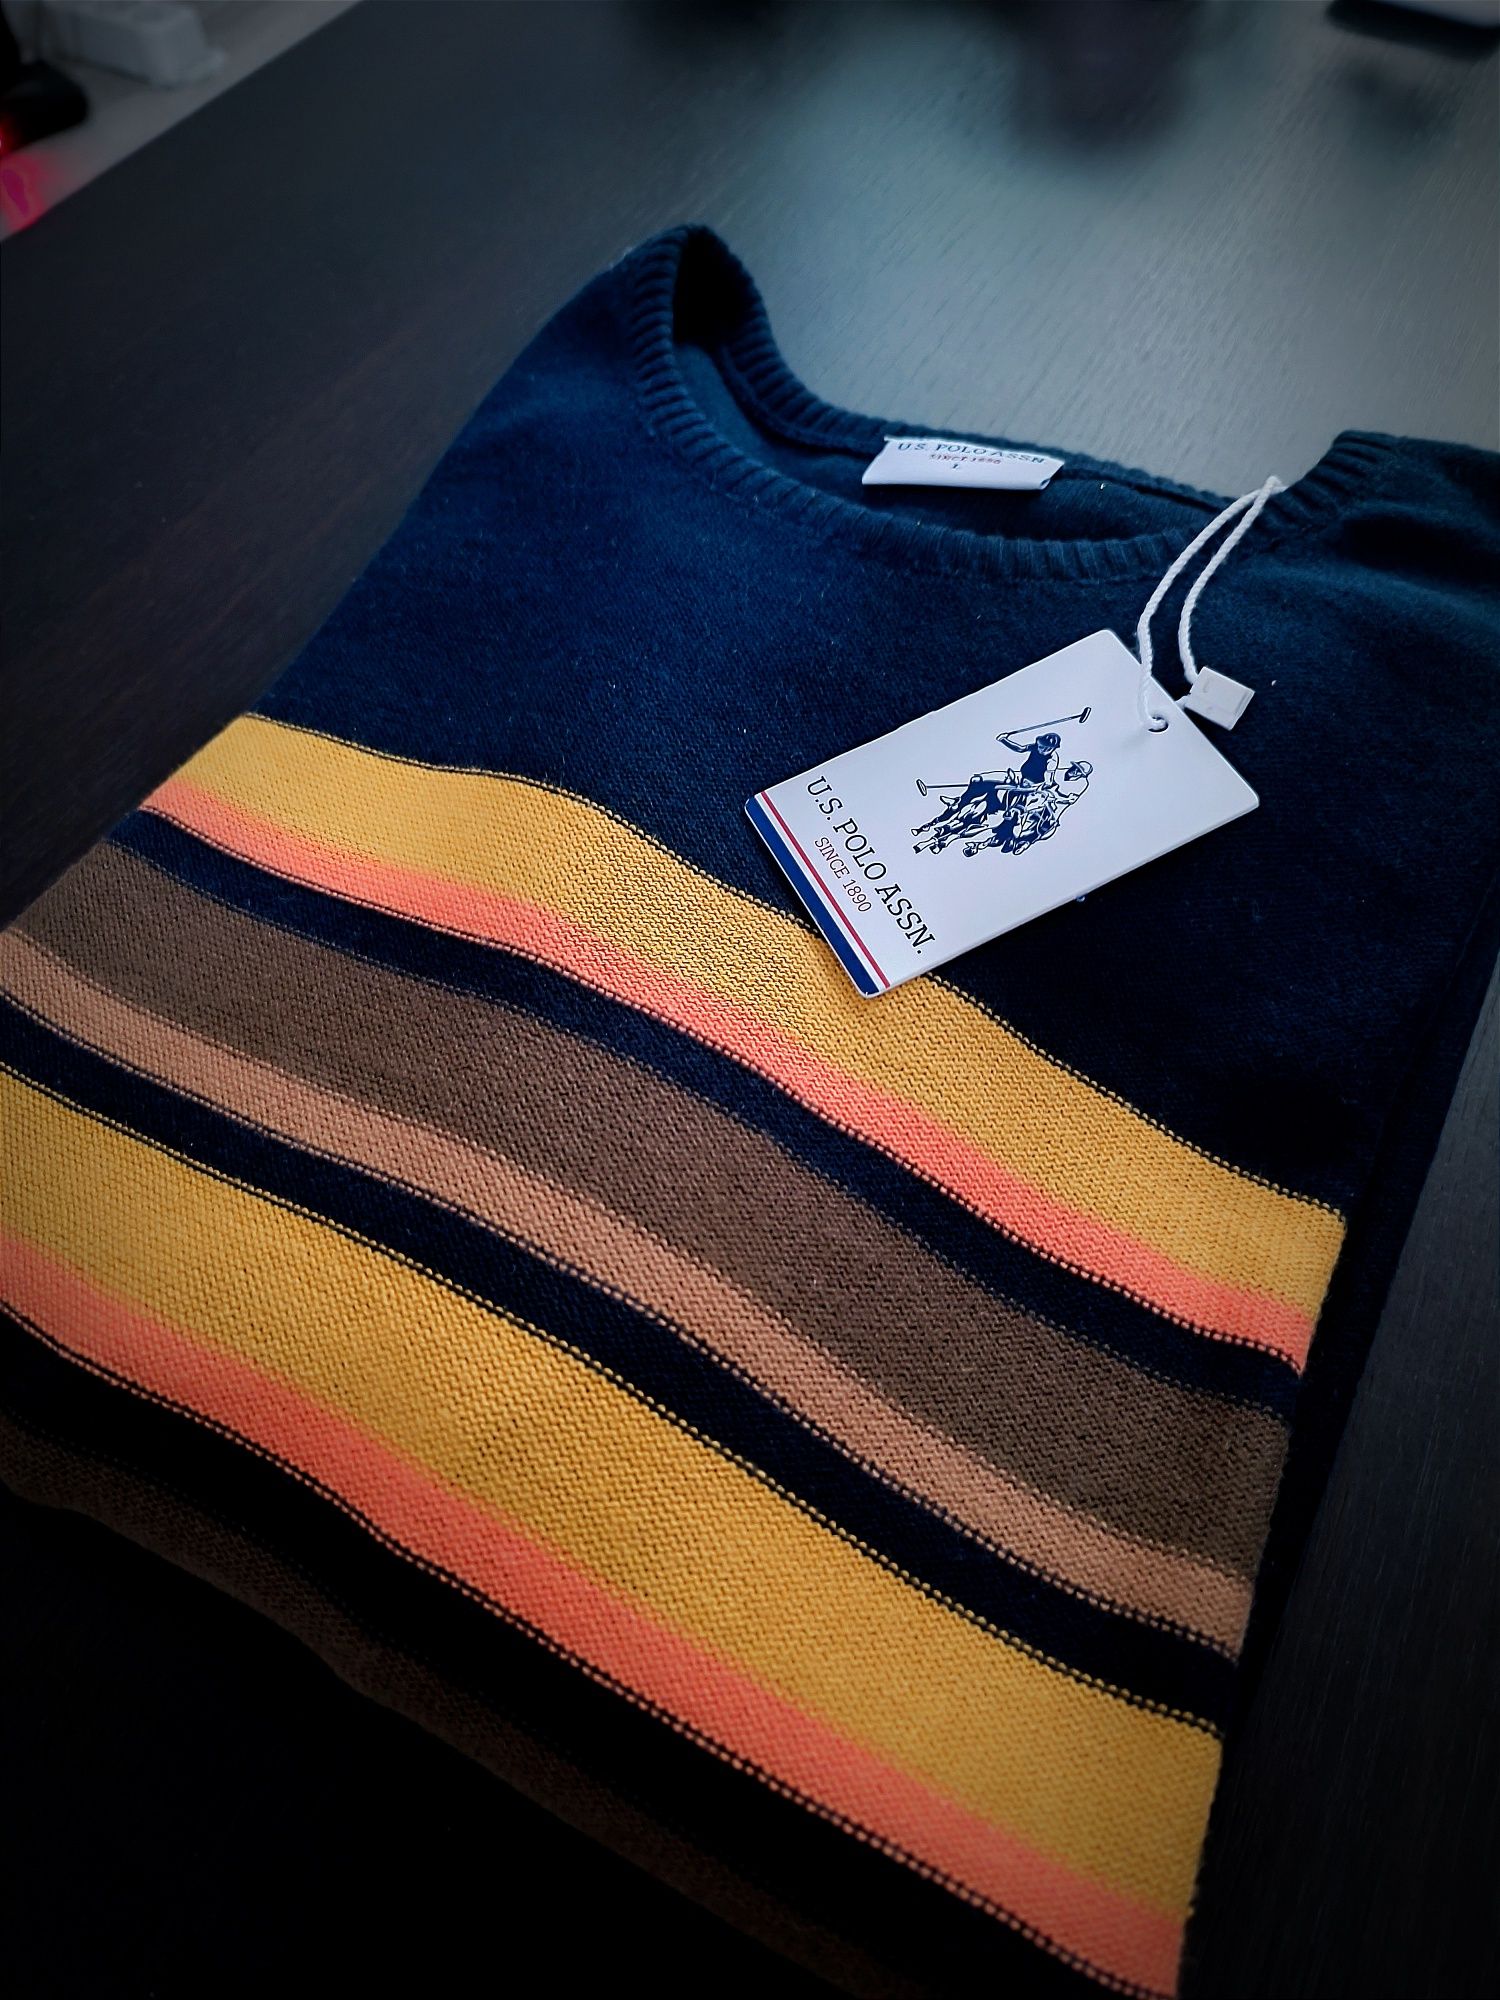 Нов мъжки стилен пуловер U.S. POLO ASSN, размер L/slim fit/